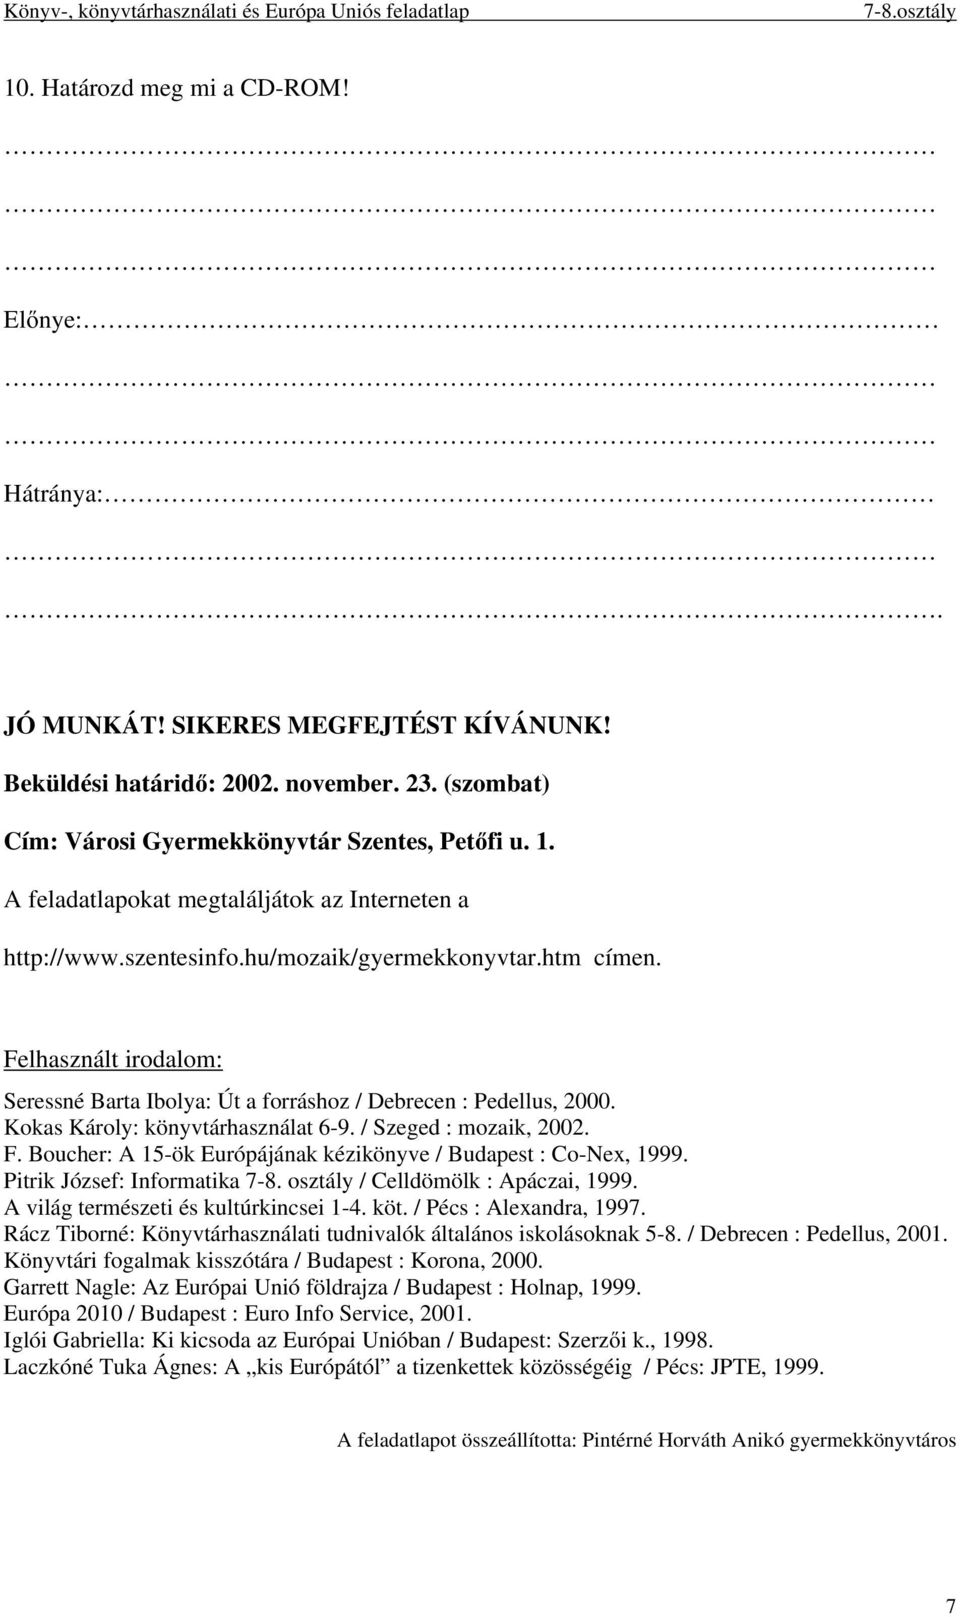 Kokas Károly: könyvtárhasználat 6-9. / Szeged : mozaik, 2002. F. Boucher: A 15-ök Európájának kézikönyve / Budapest : Co-Nex, 1999. Pitrik József: Informatika 7-8.